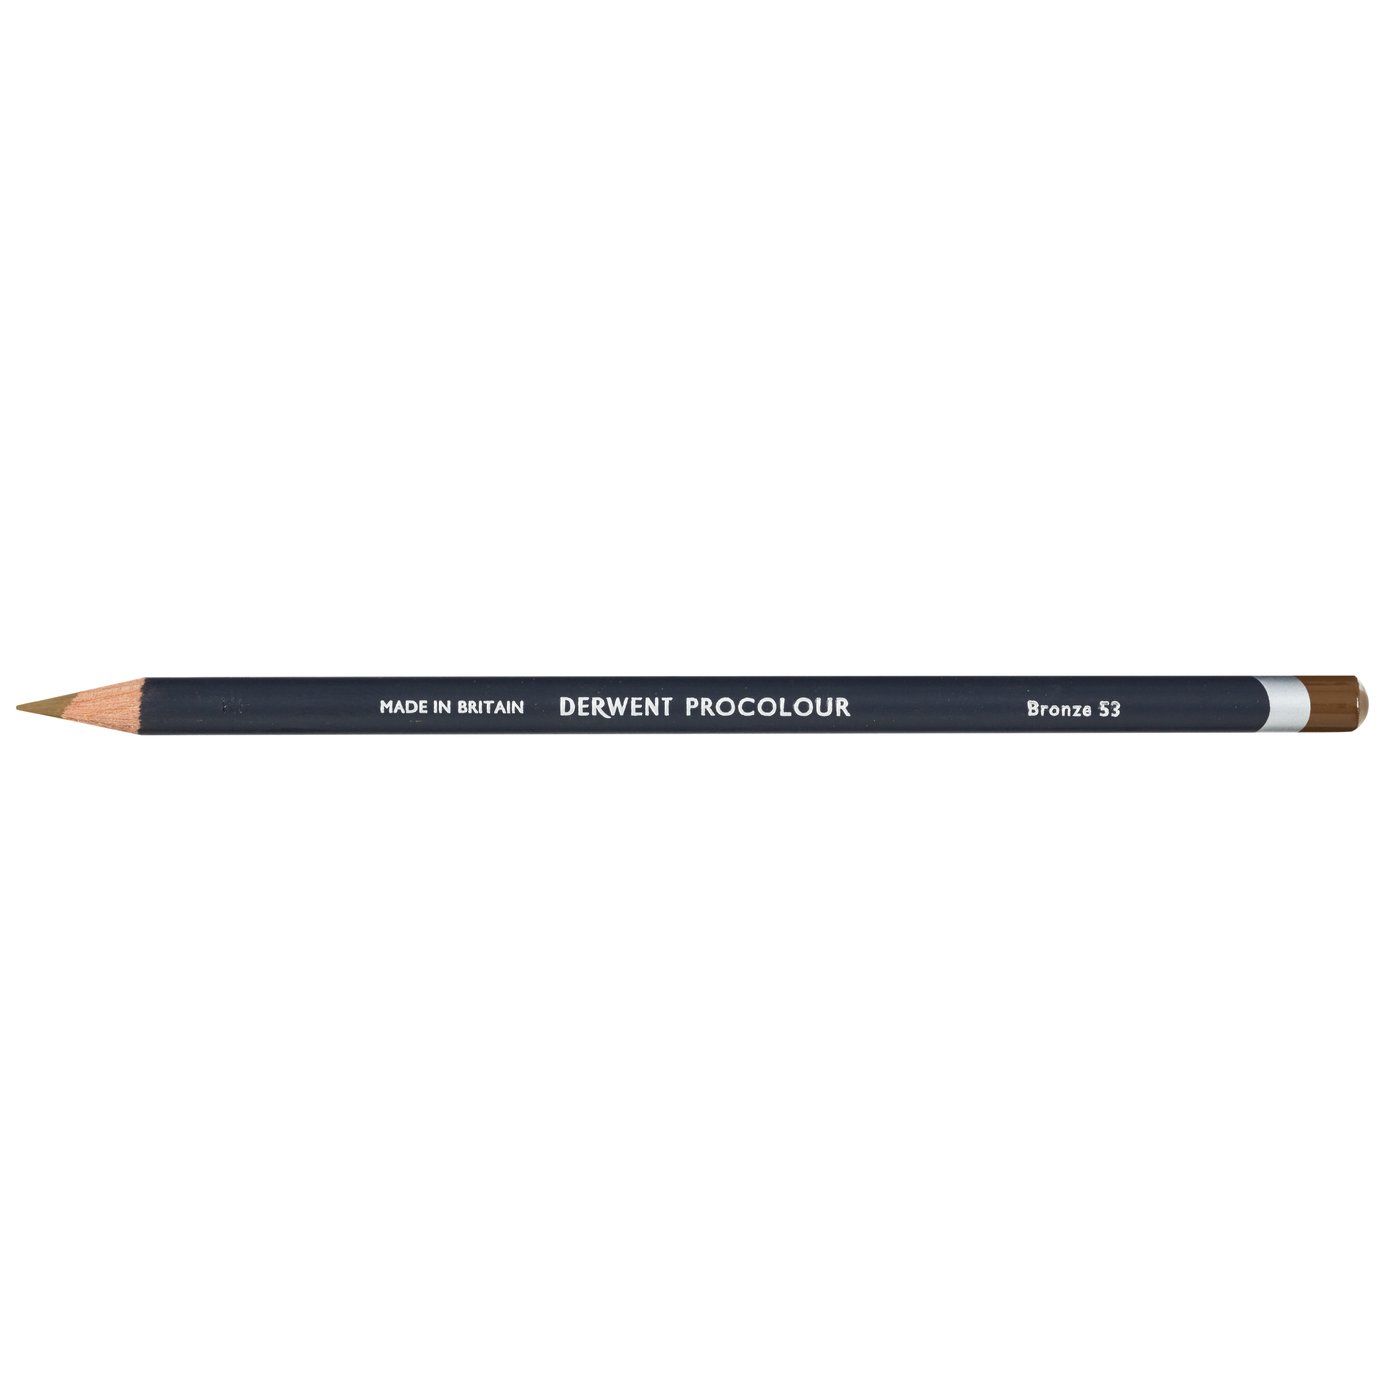 Derwent Procolour Pencil - 53 Bronze